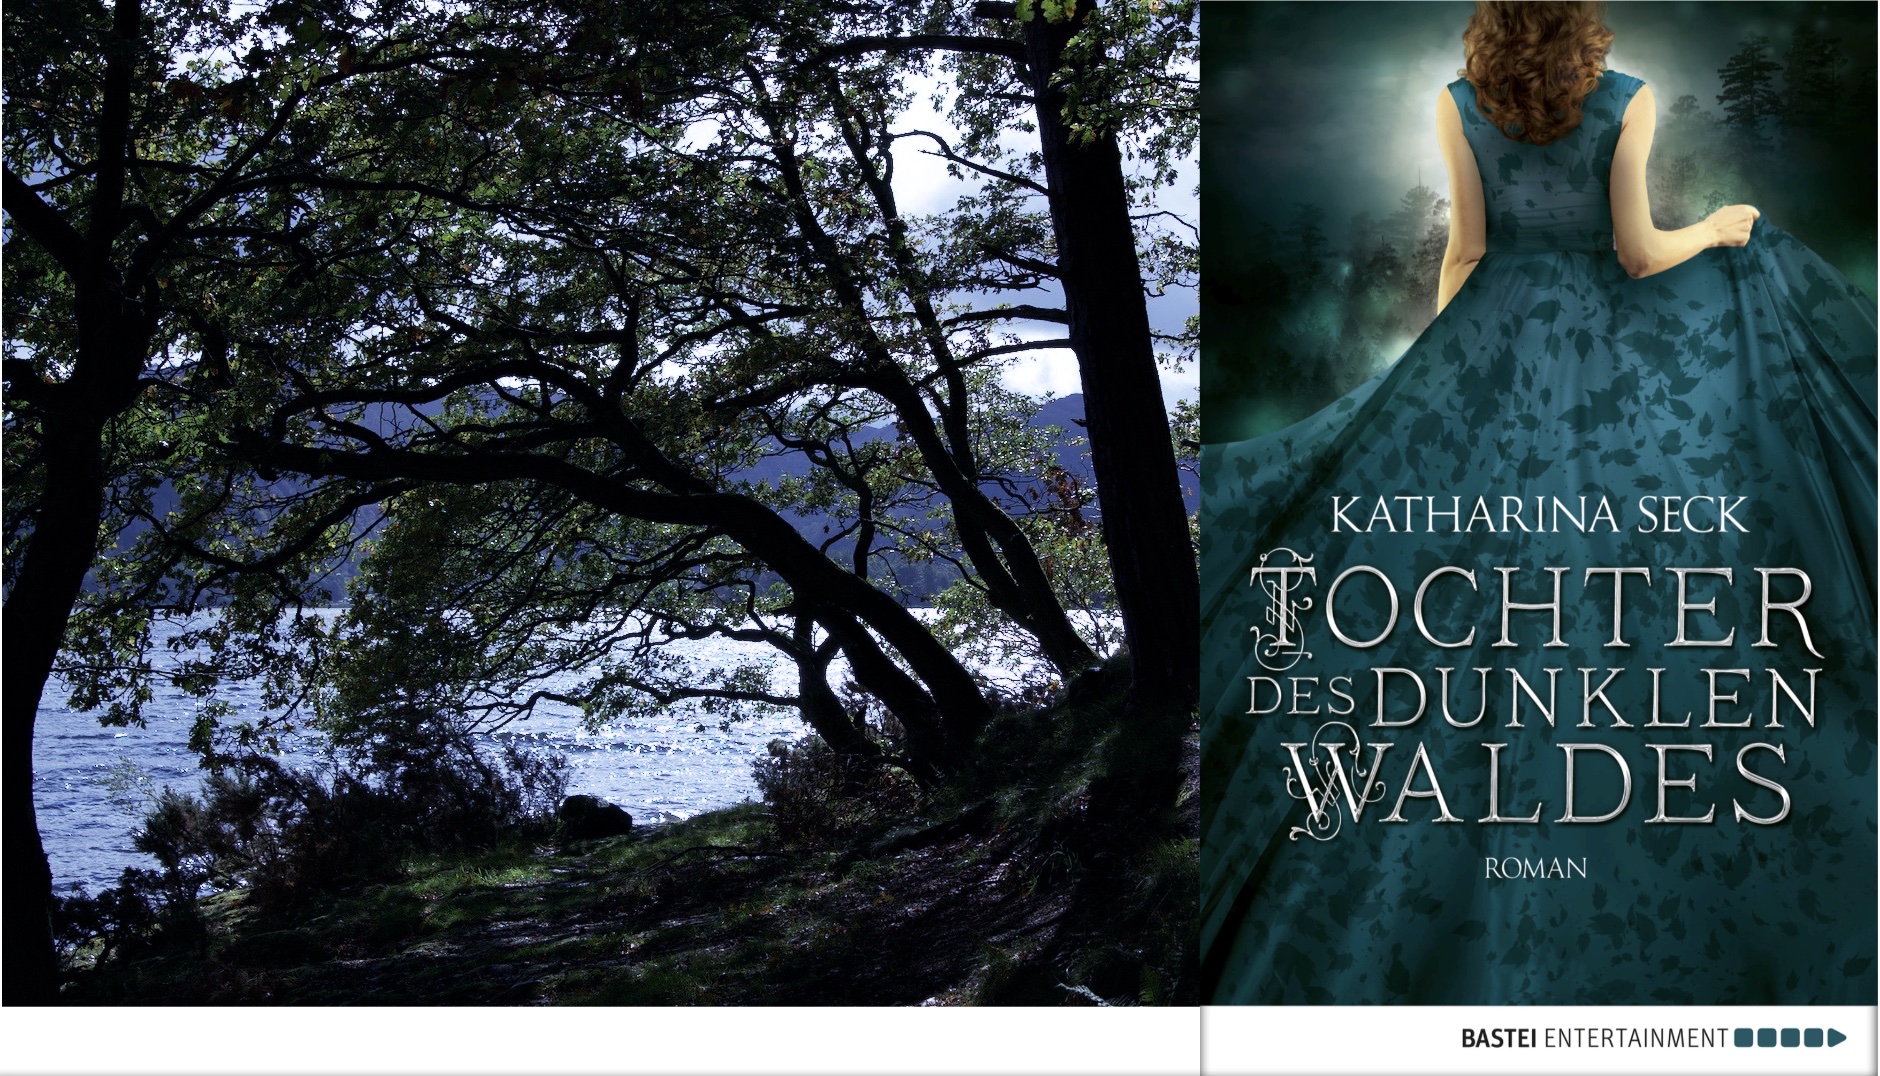 Waldbild mit dem Cover von "Die Tochter des dunklen Waldes" auf der rechten Seite. 